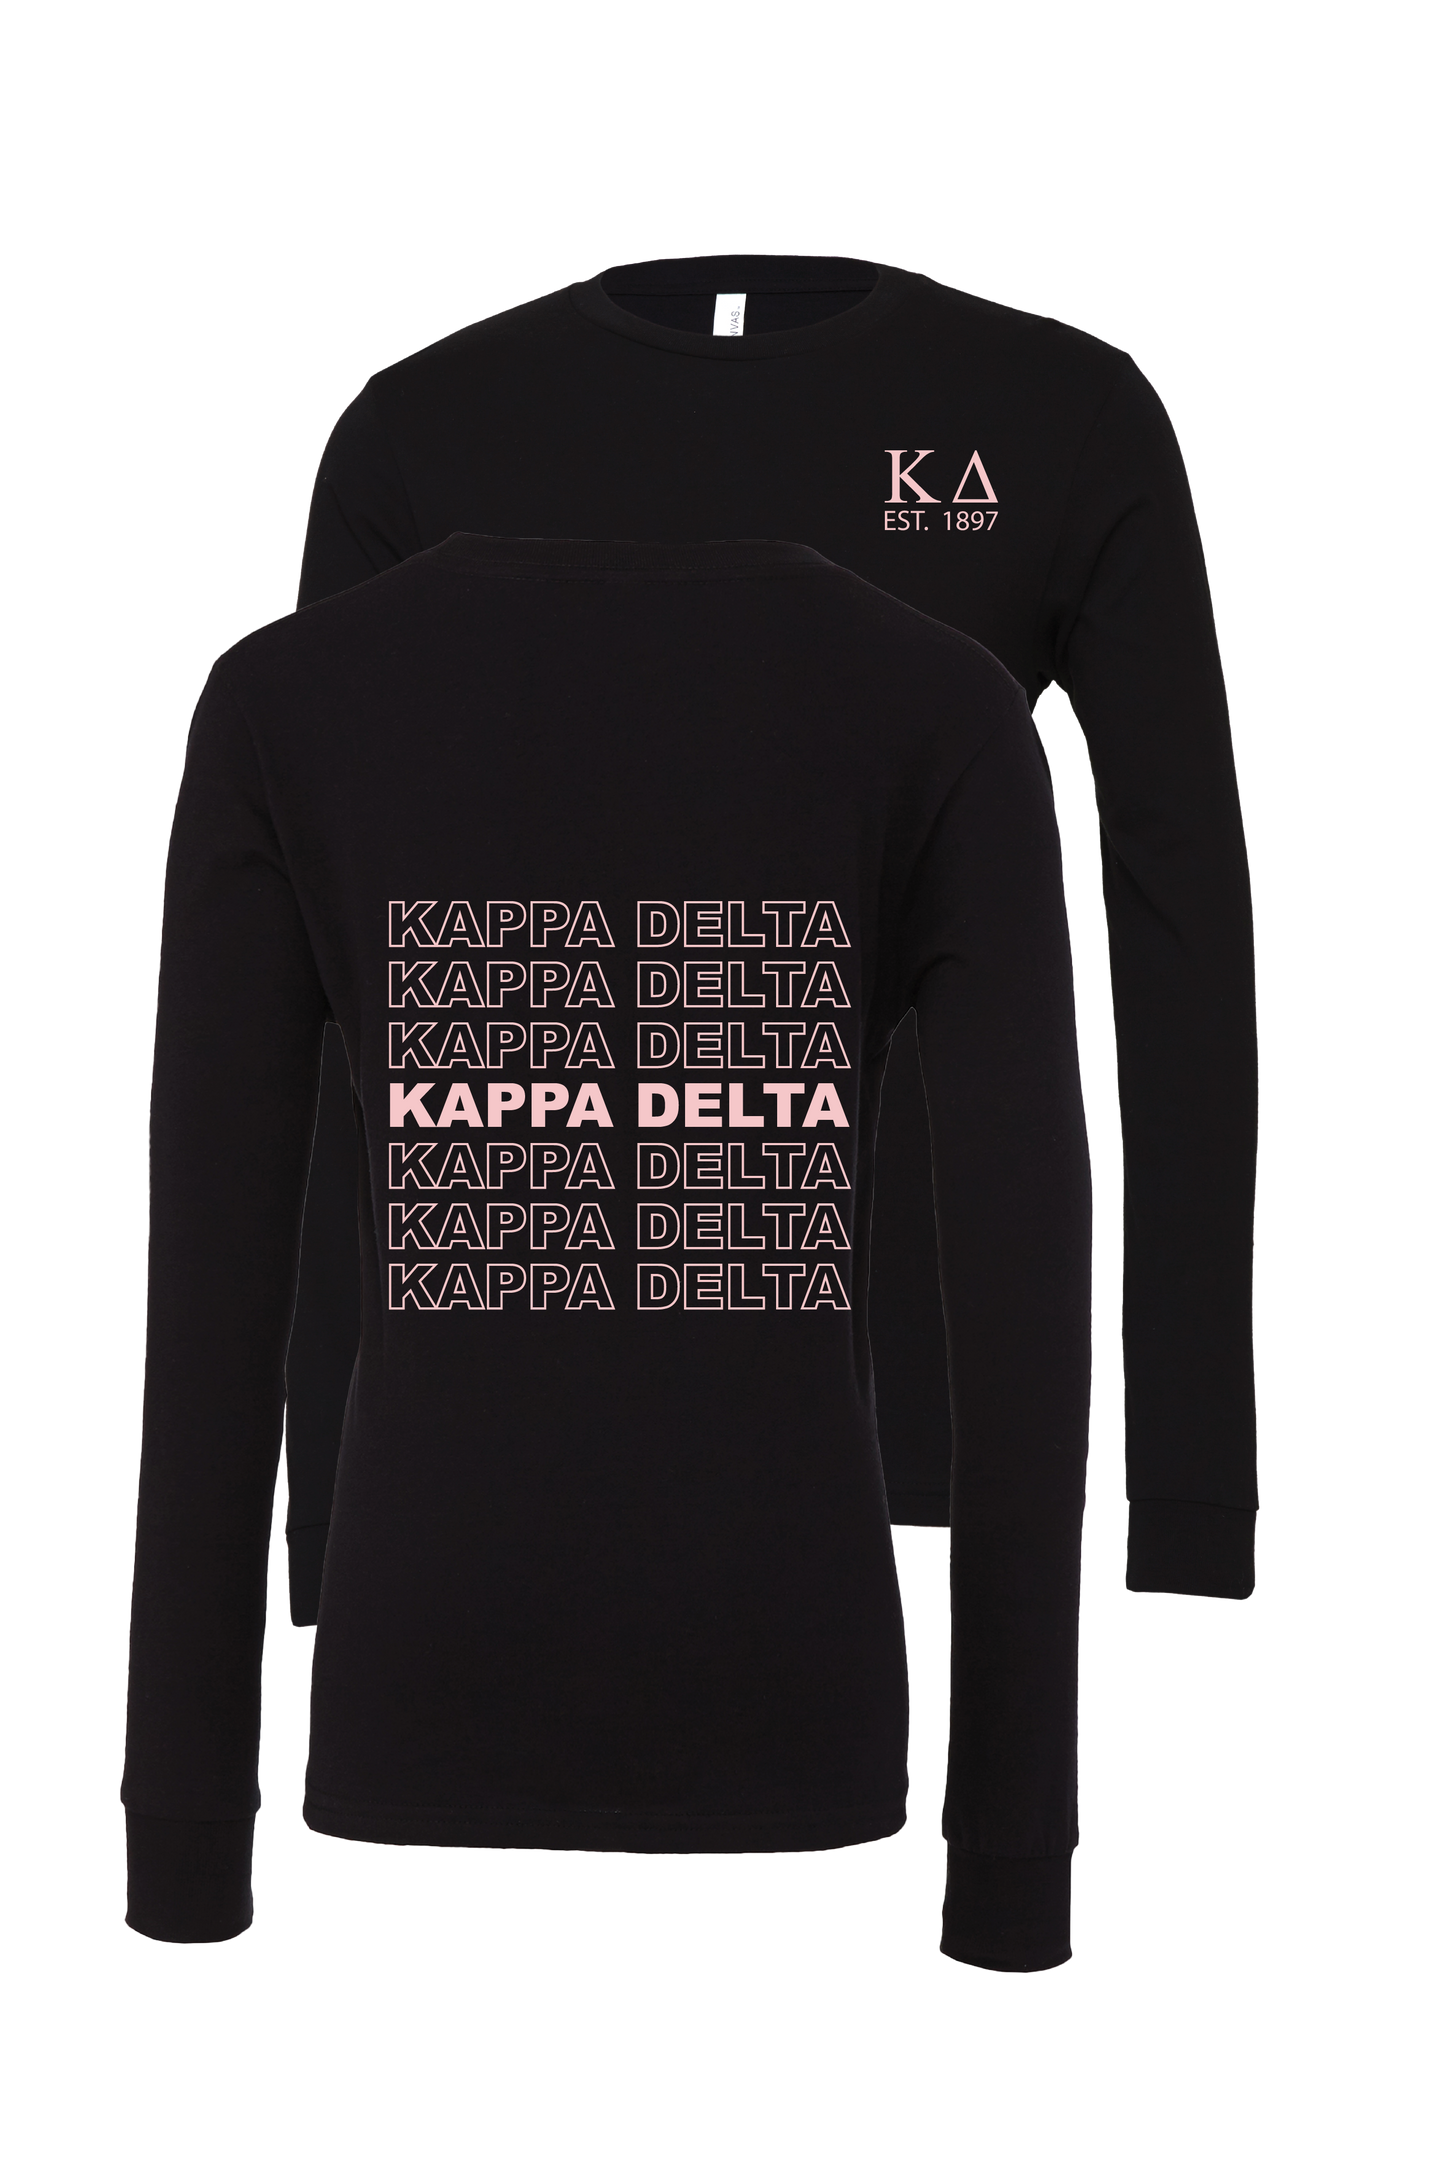 Kappa Delta Repeating Name Long Sleeve T-Shirts